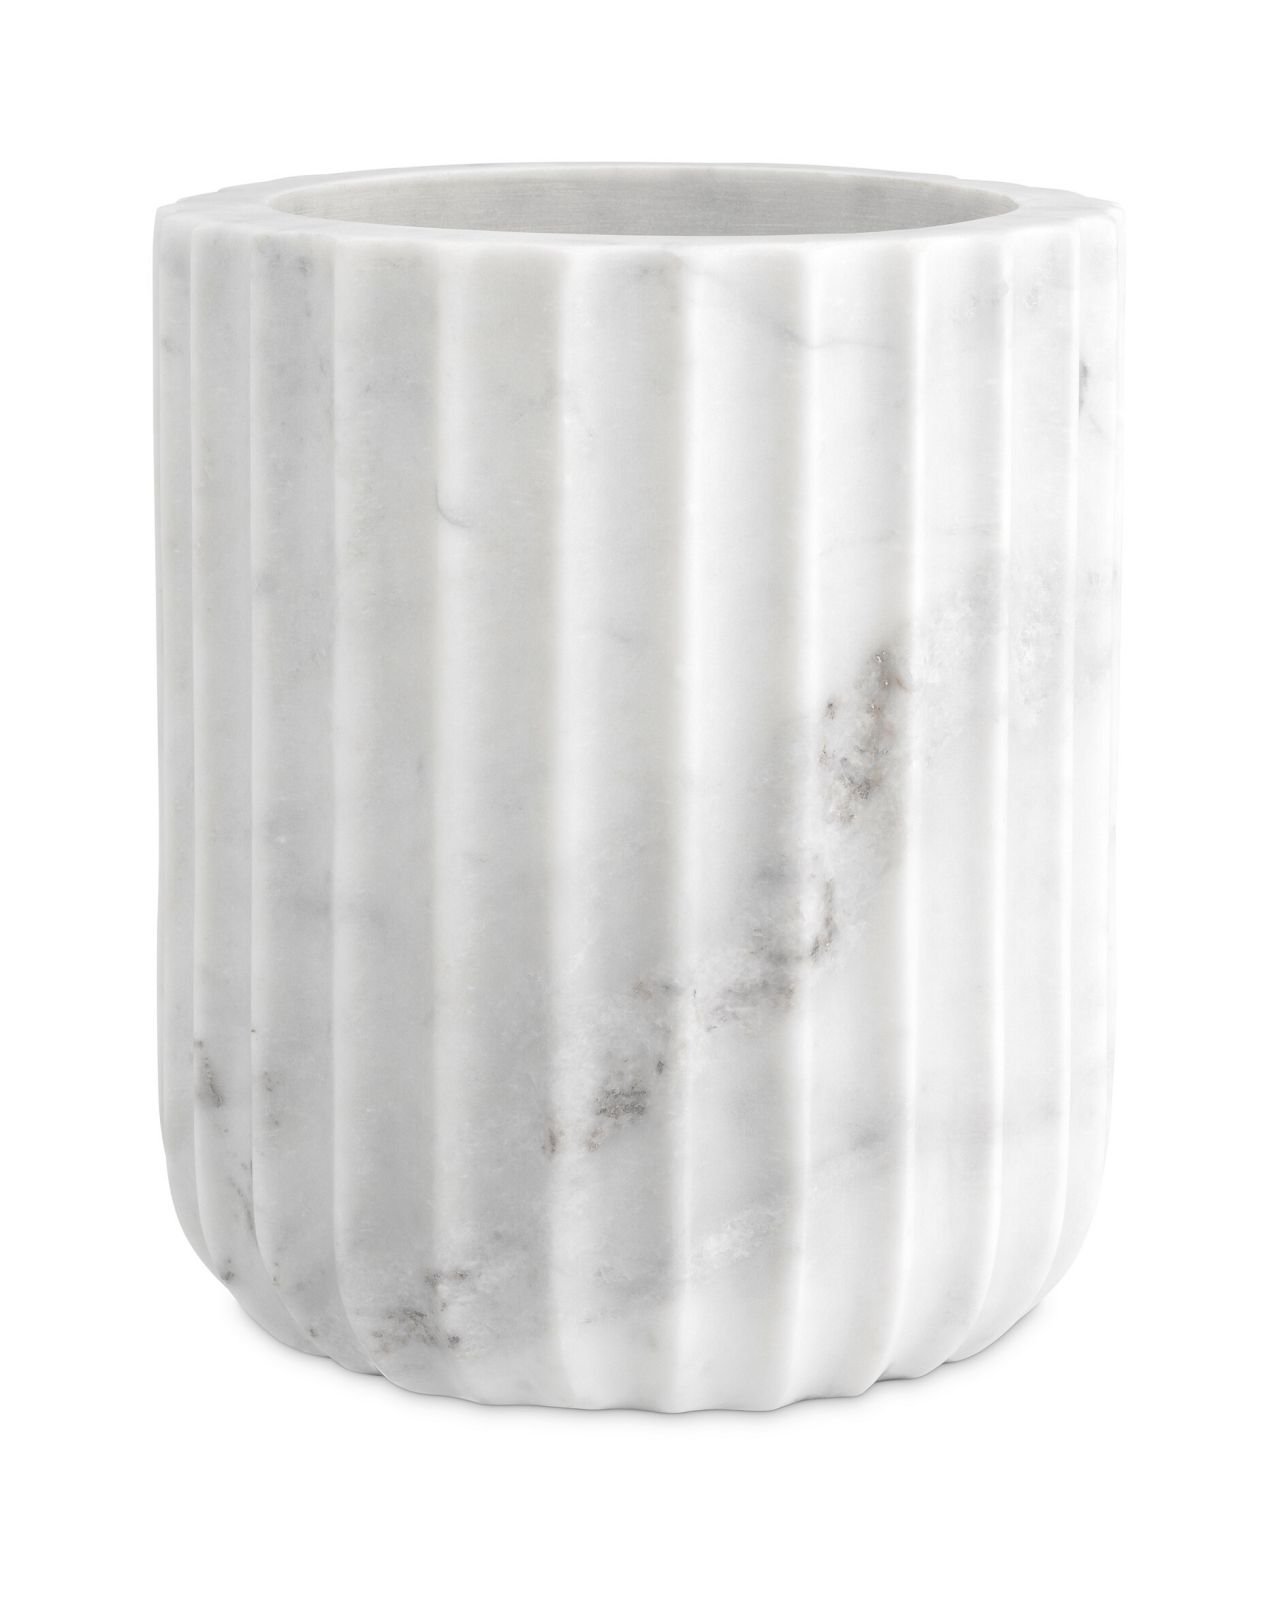 Nava vas white marble